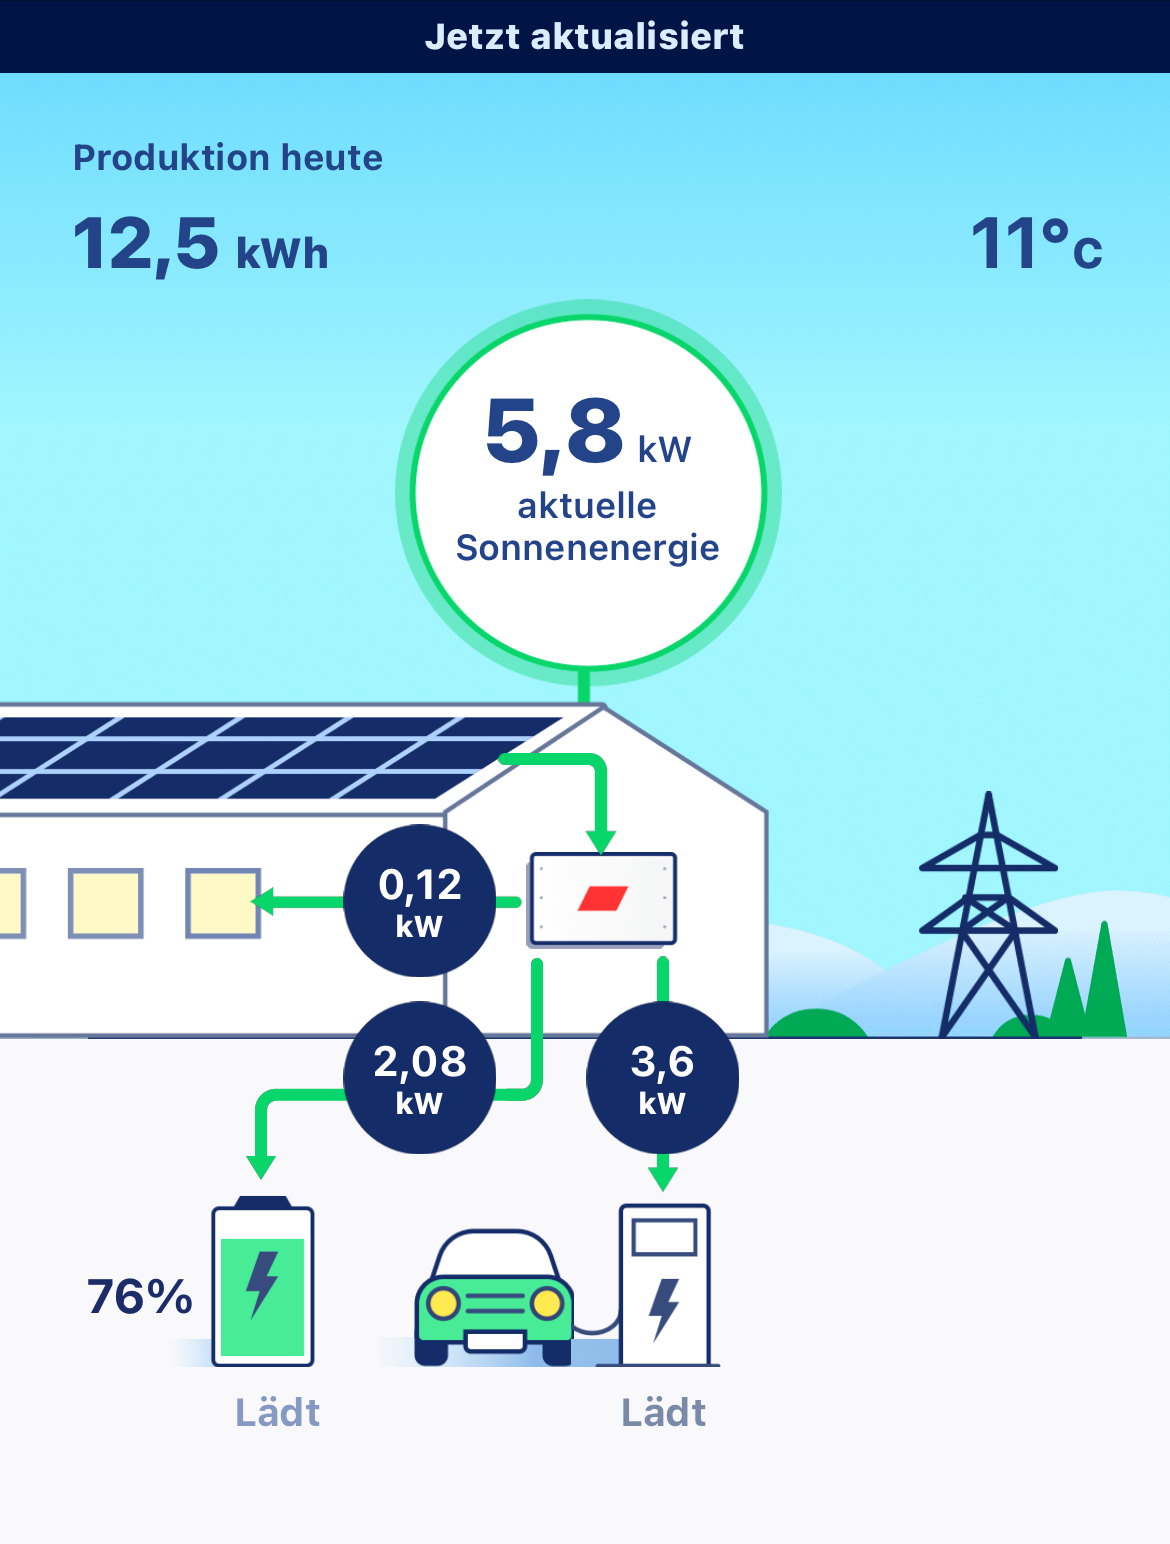 Solaroptimiert Nutzung von Photovoltaik: Nicht nur das Haus oder Unternehmen kann kostengünstig mit selbsterzeugtem Strom versorgt werden, sondern die Einbindung aller Verbraucher z.B. Elektrofahrzeuge macht sehr viel Sinn.